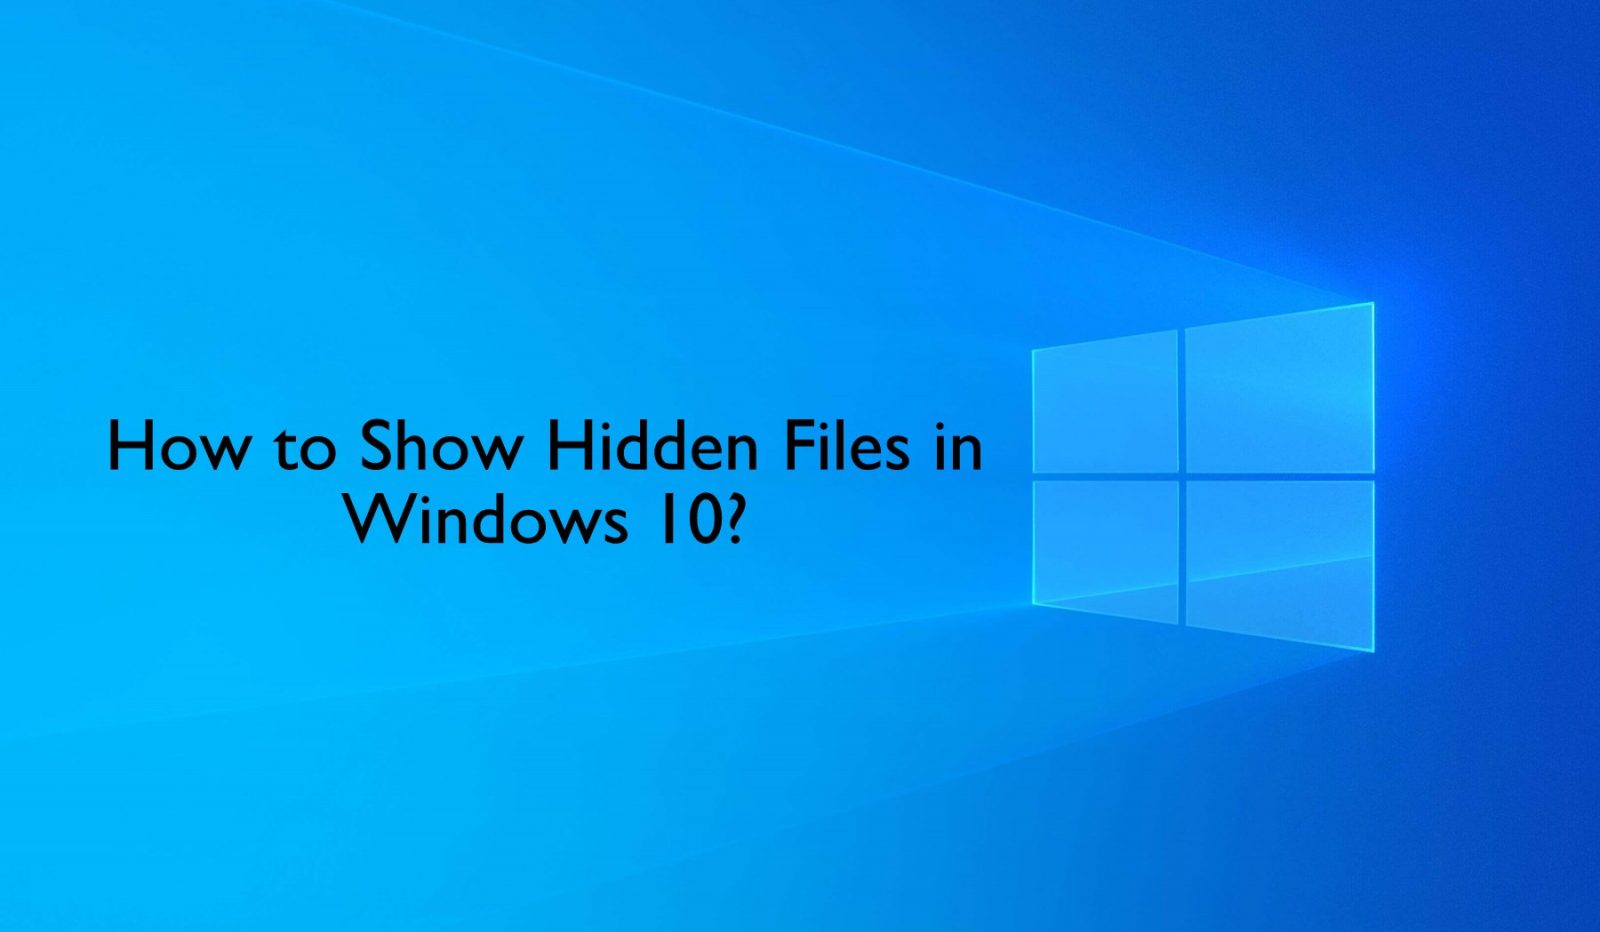 كيفية إظهار الملفات المخفية بتنسيق Windows 10 أجهزة كمبيوتر محمولة وأجهزة كمبيوتر سطح المكتب 1